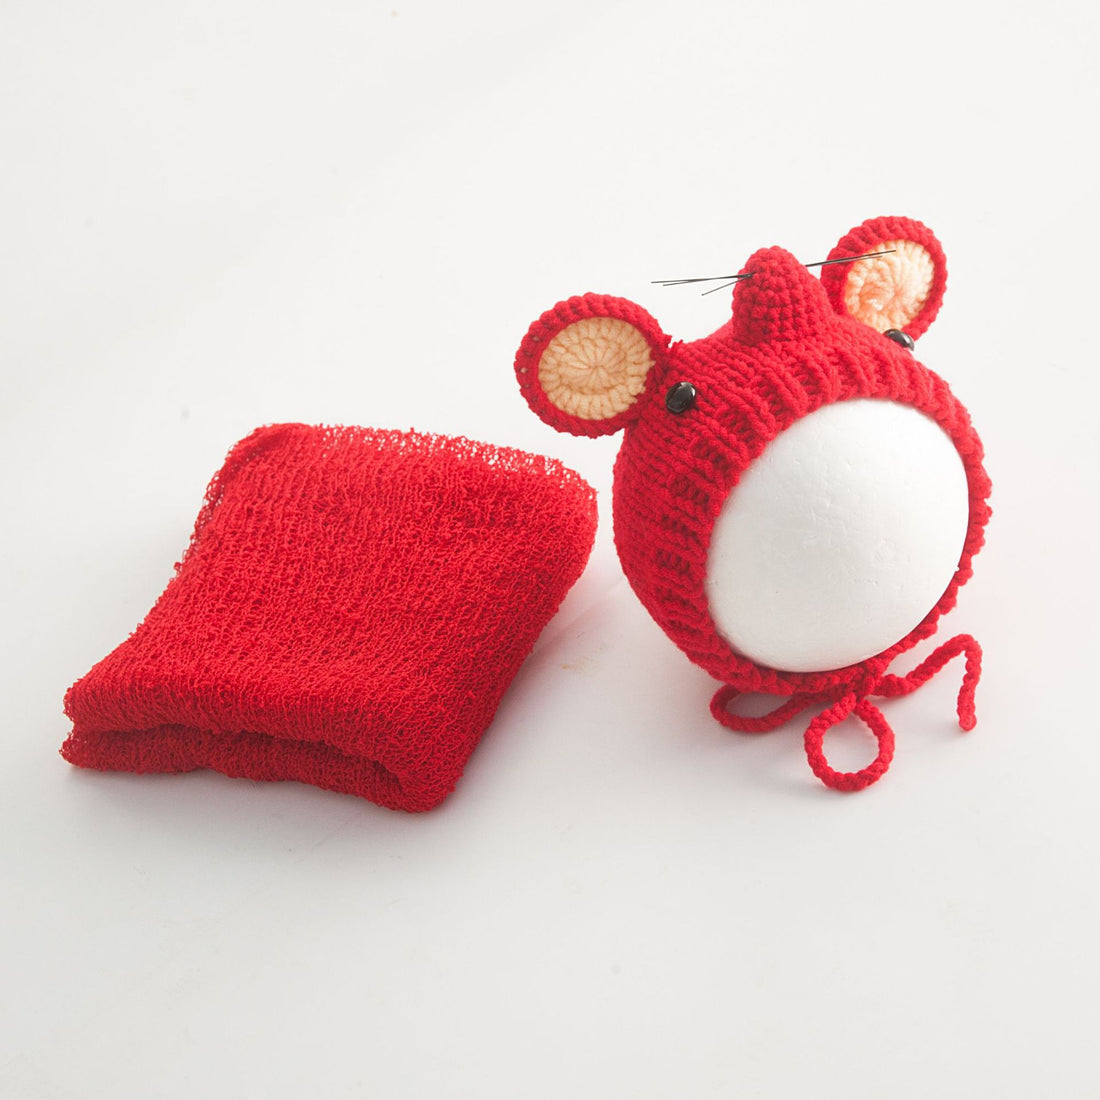 Avezano Little Mouse Shape Children Photography Hat + Wrap